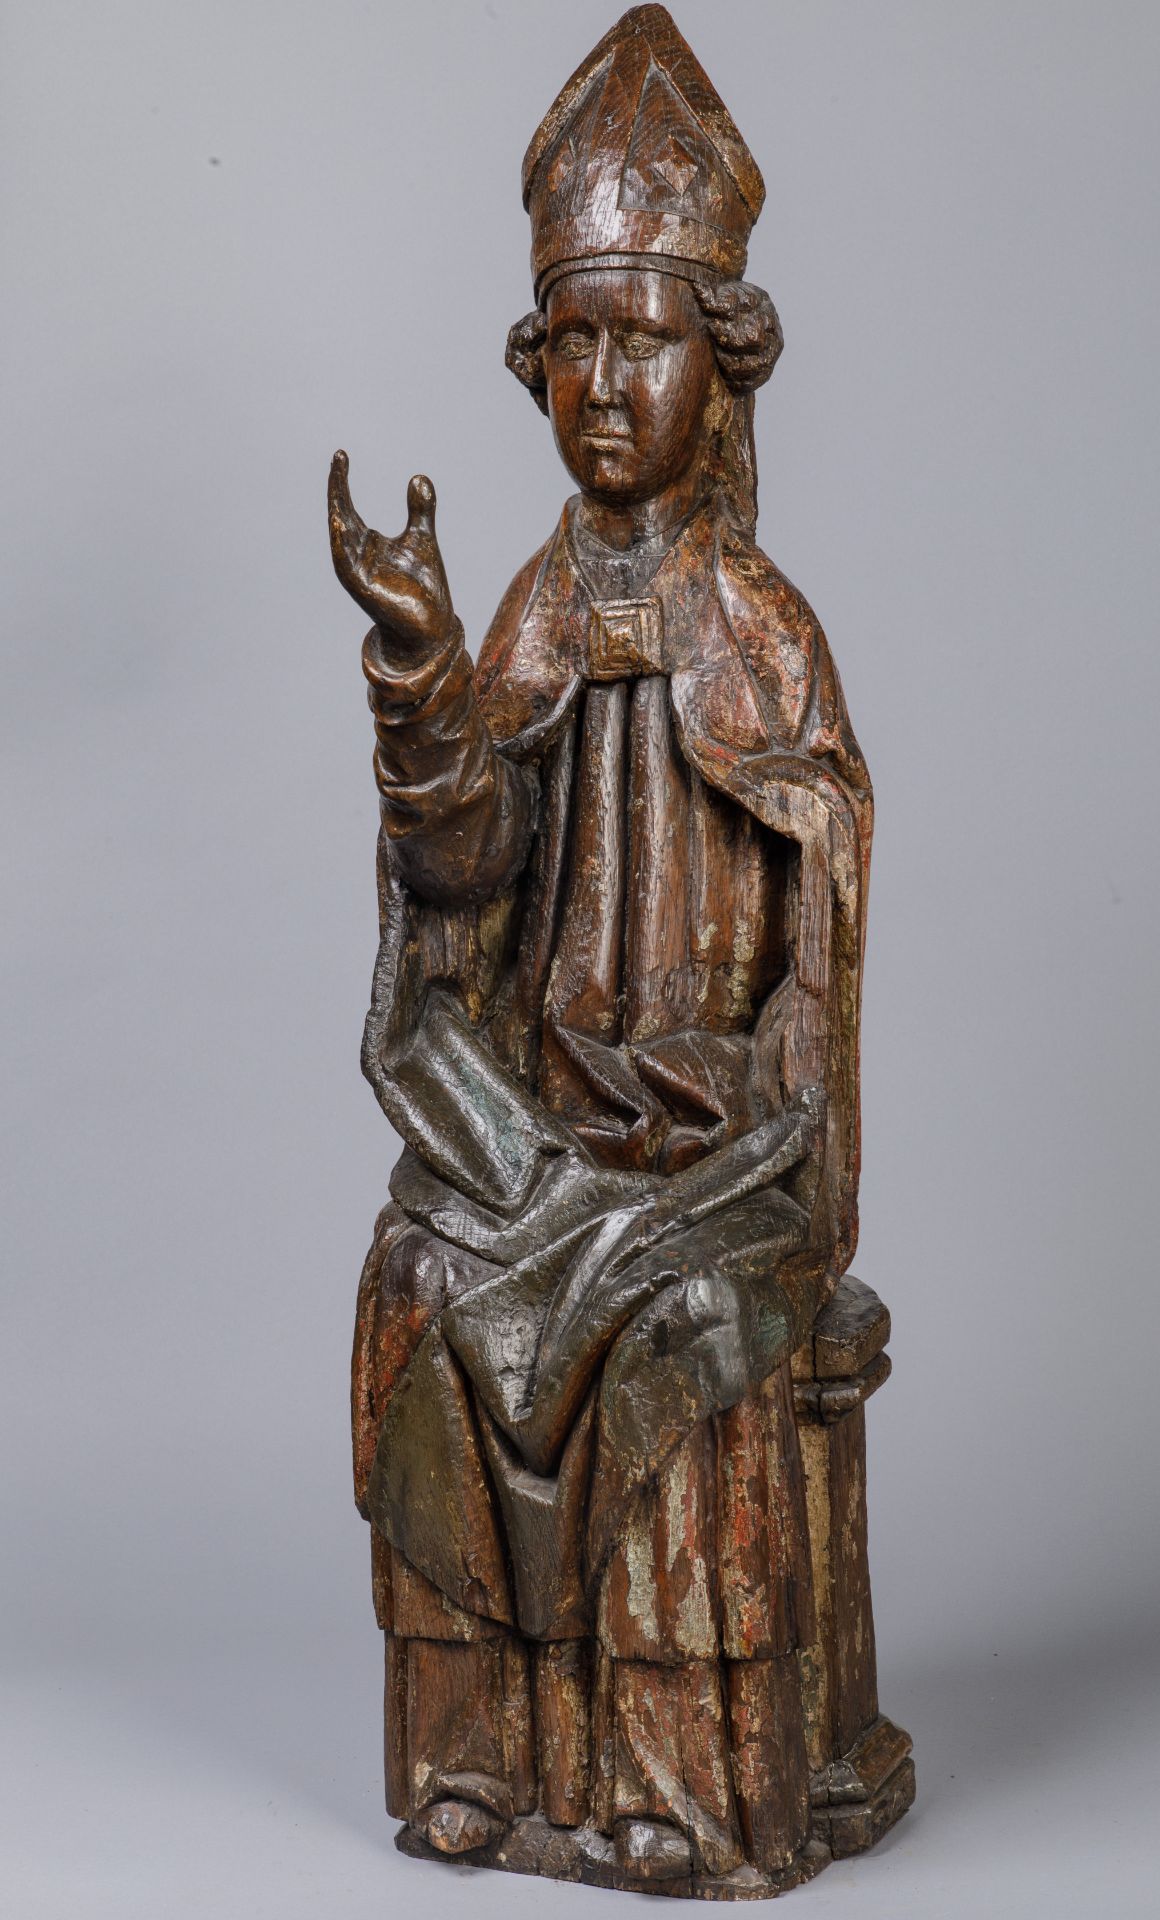 Saint Evêque avec des cheveux bouclés, la main droite levée en bénédiction, portant une mitre et une